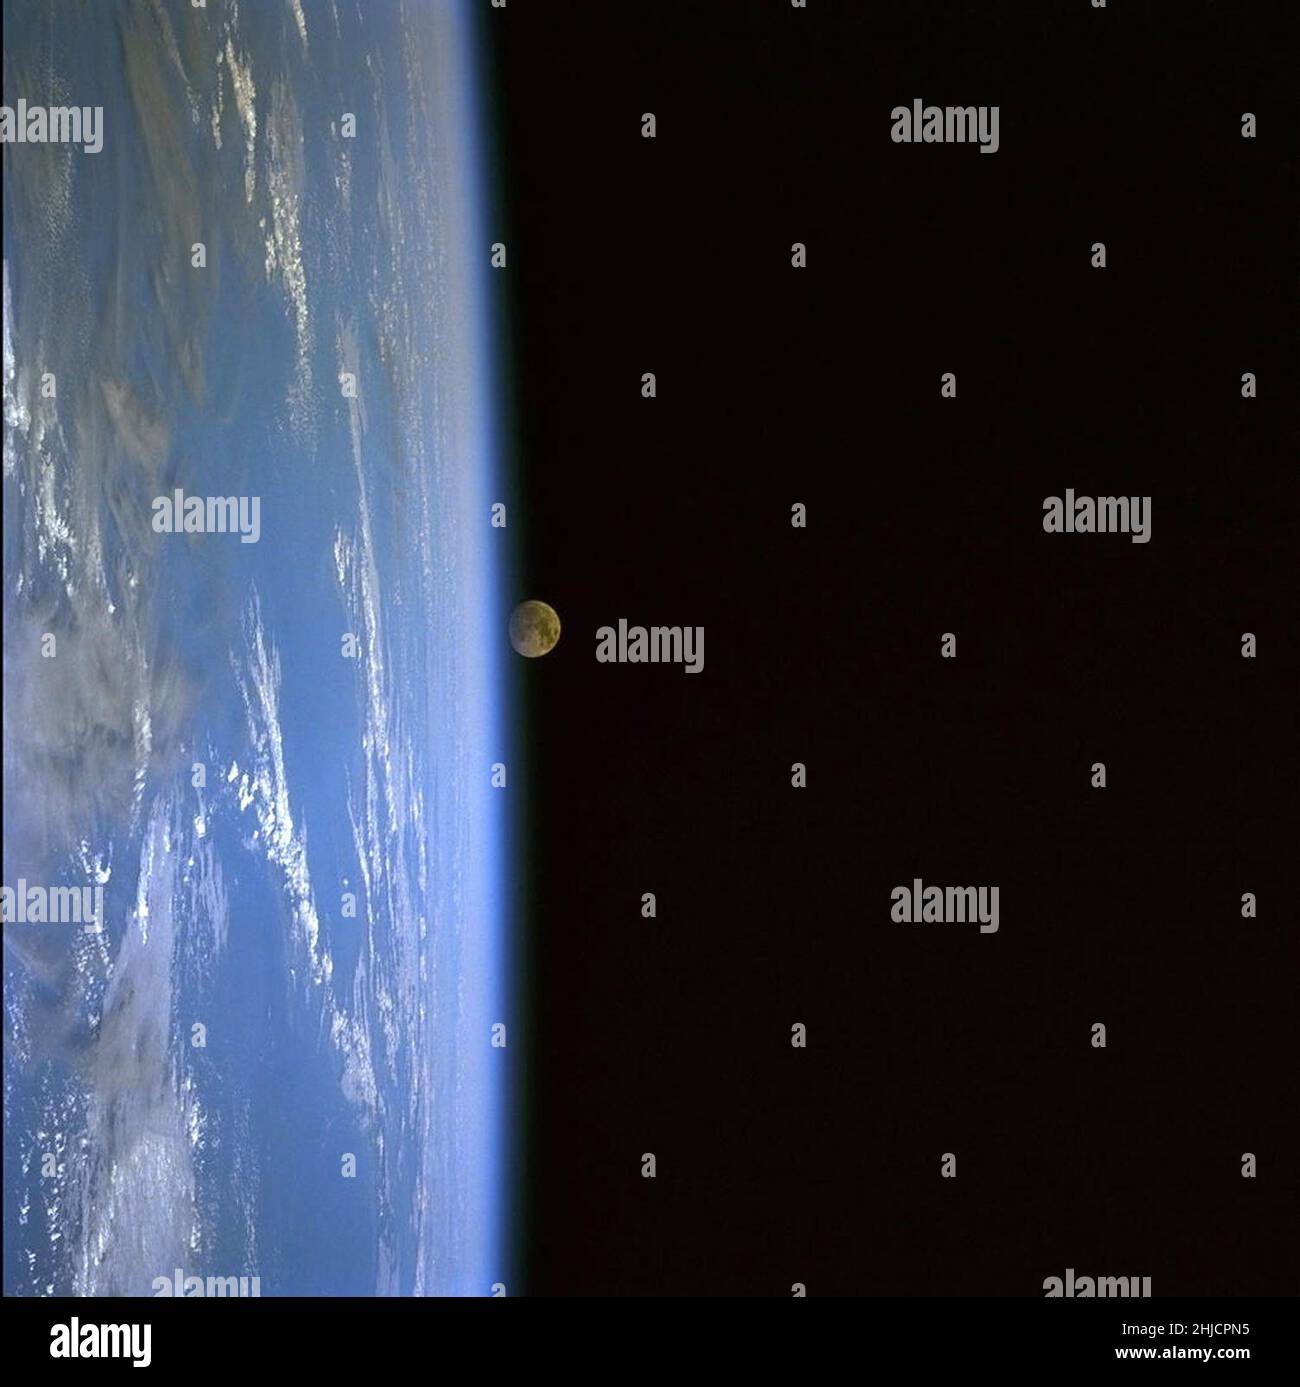 Esta imagen tomada por un astronauta a bordo del transbordador espacial Discovery durante la misión STS-103 muestra una vista panorámica de la Tierra en la luna. Diciembre, 1999. Foto de stock